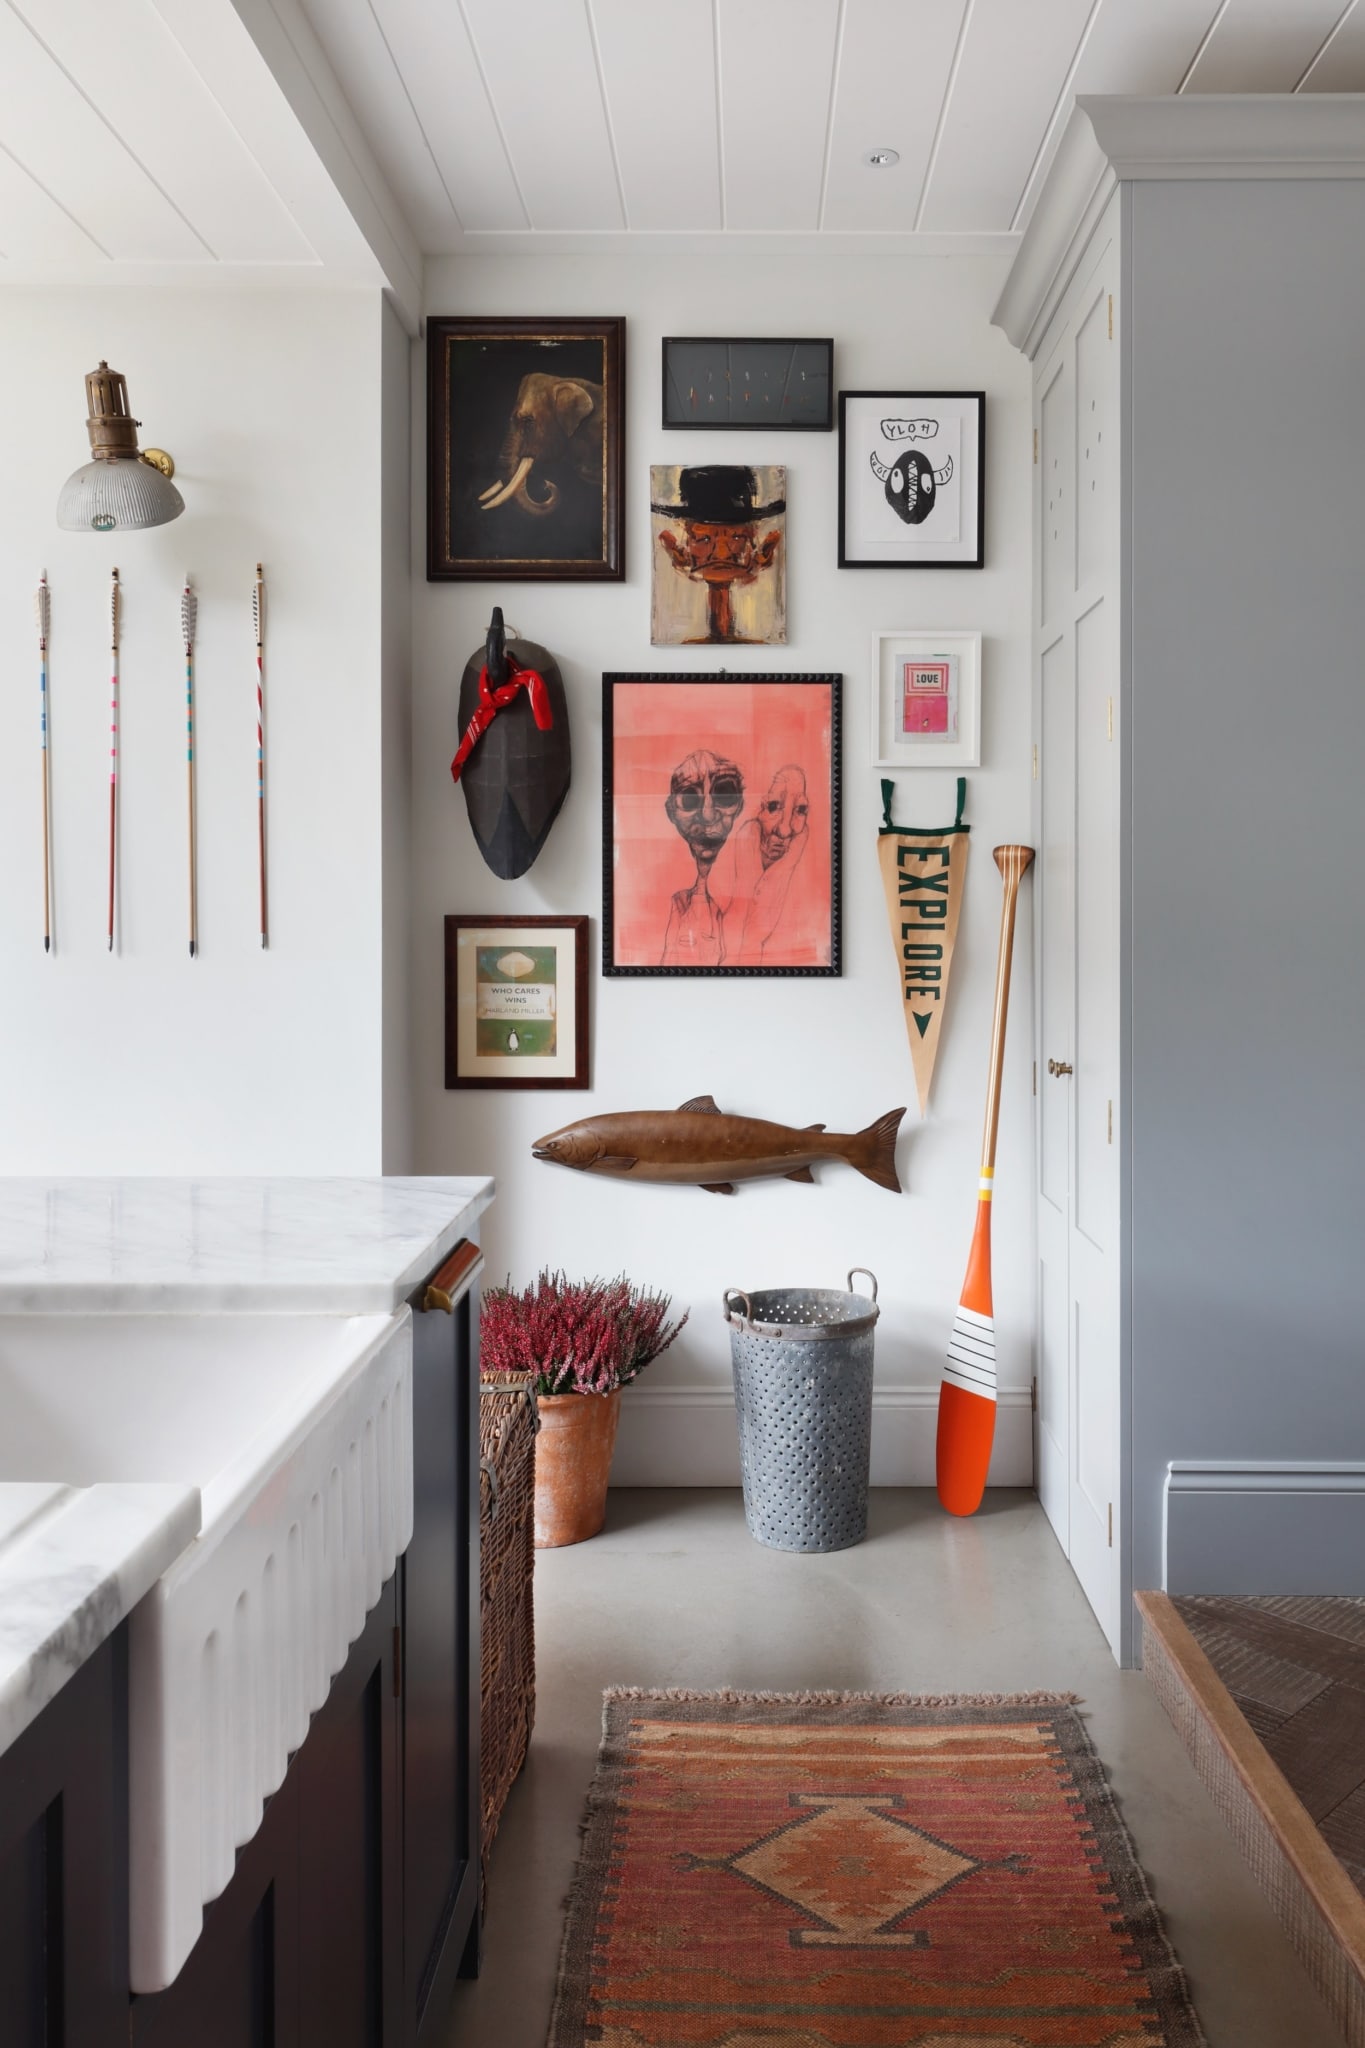 HÁM INTERIORS - kitchen - kitchen remodel - kitchen inspo - kitchen inspiration - kitchen design - kitchen decor - gallery wall -London designer